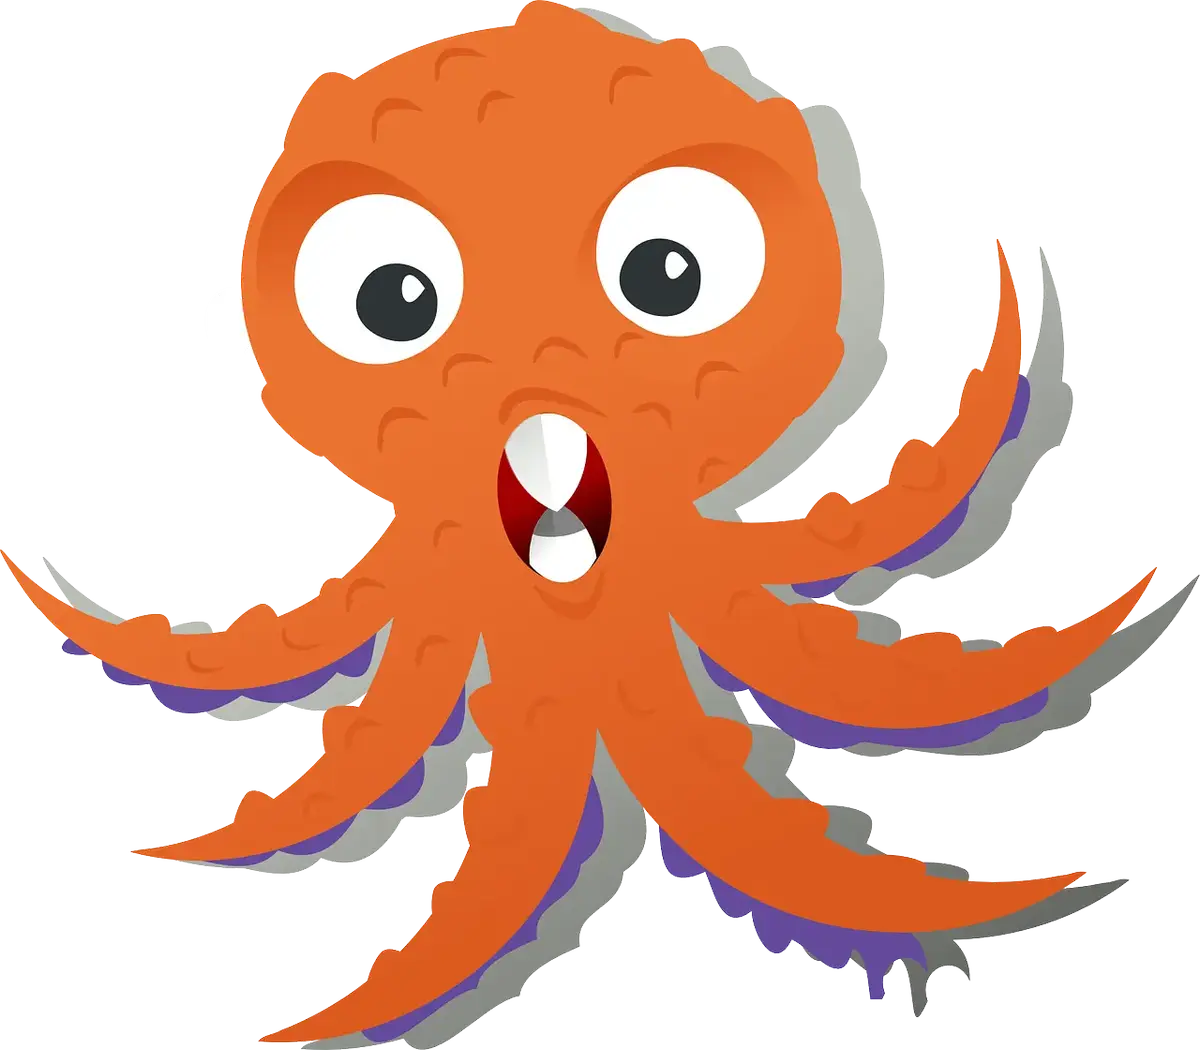 octopus-152287 1280.webp